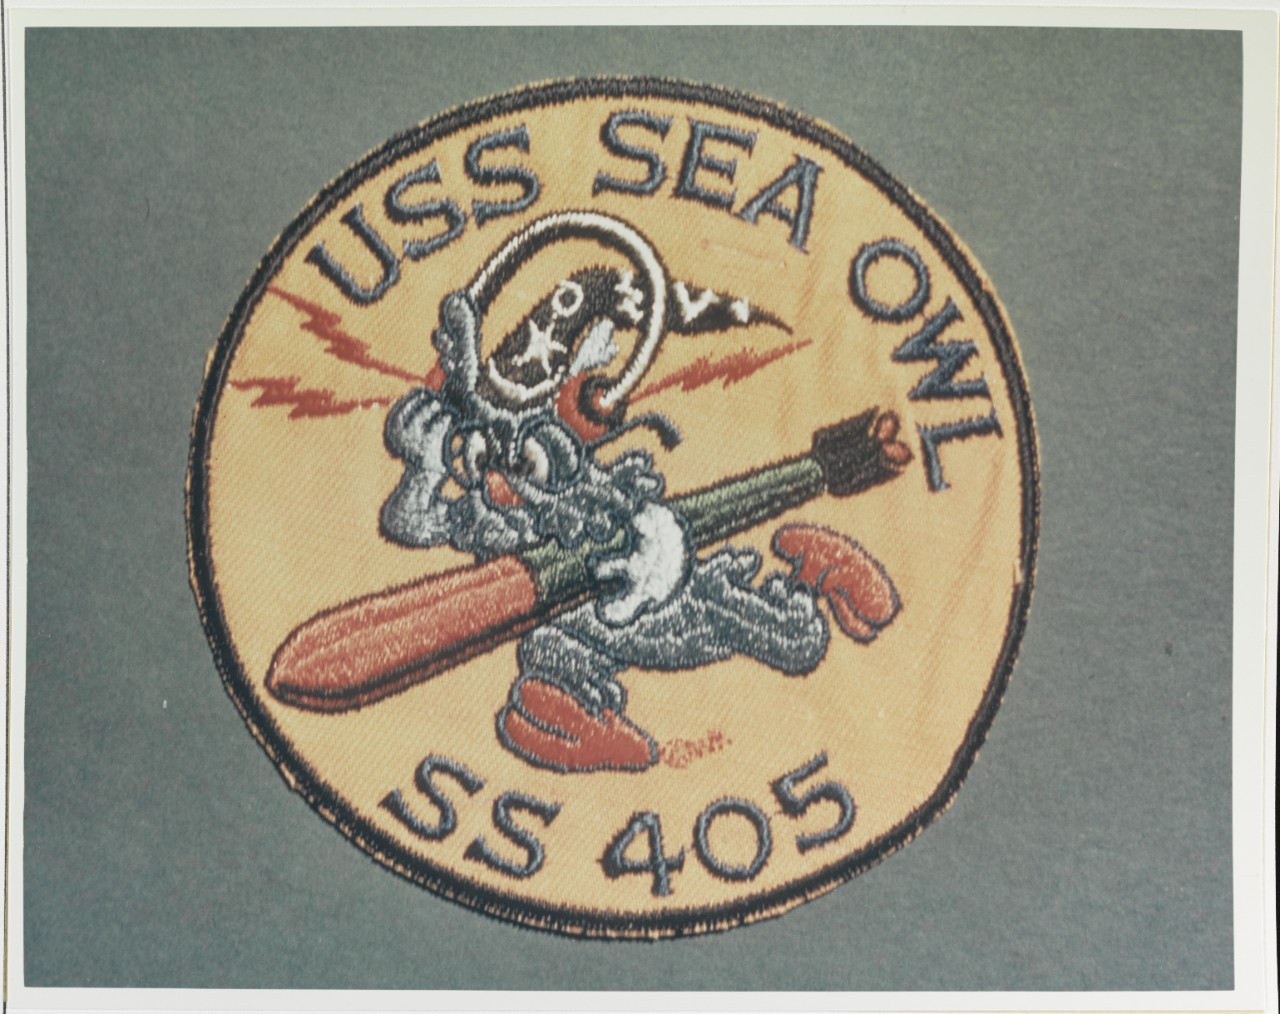 Insignia: USS SEA OWL (SS-405)